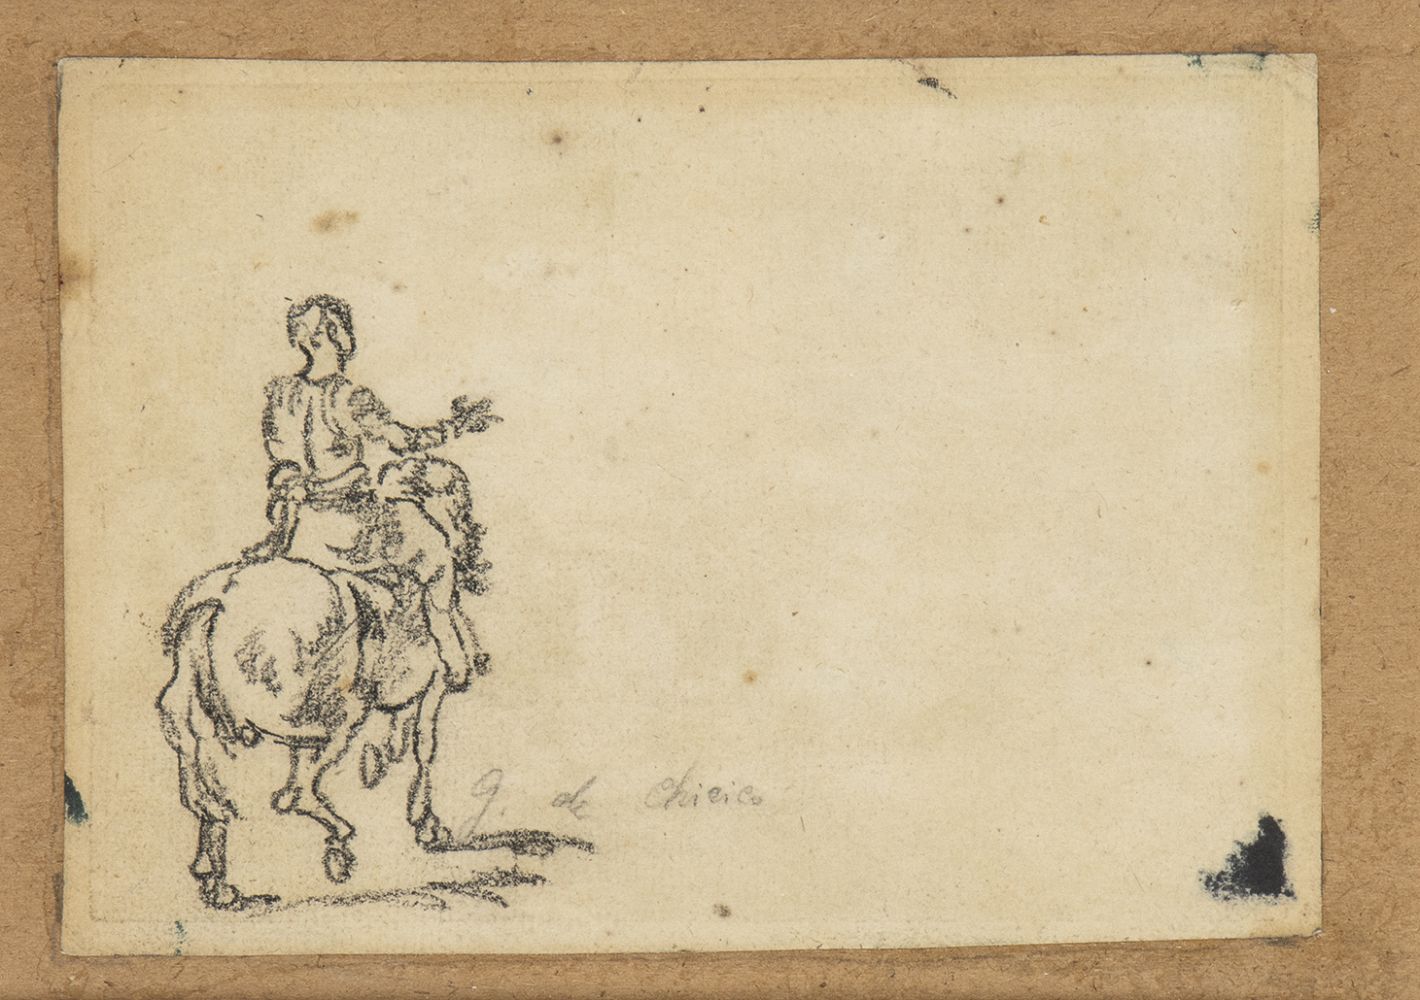 GIORGIO DE CHIRICO (Volo, 1888 - Rome, 1978): Study of figure on horseback, late 40's